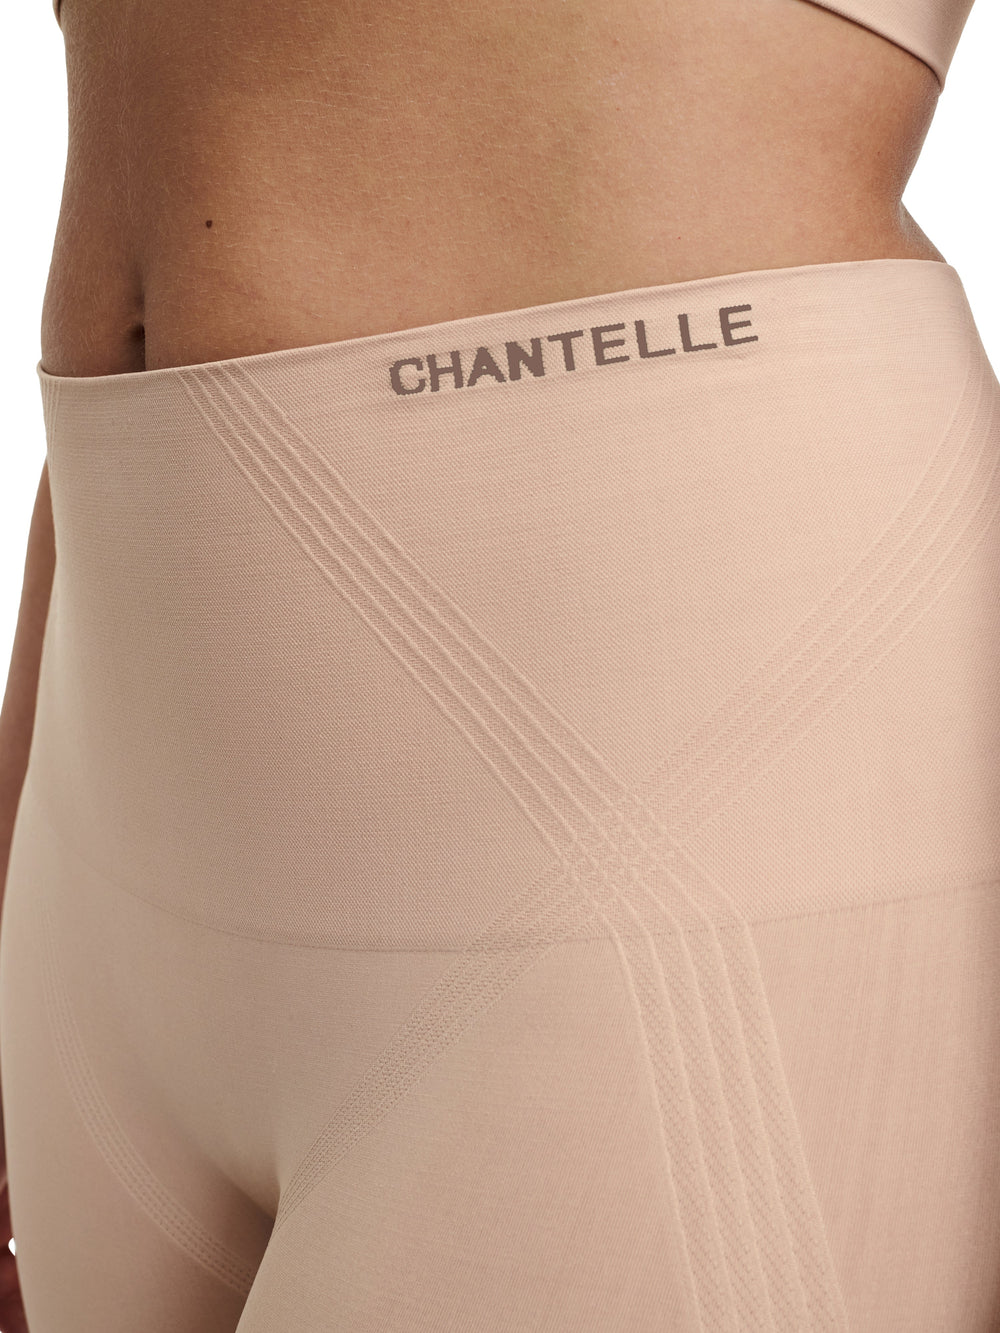 Chantelle 光滑舒適塑形長短褲 - Sirocco 短褲 Chantelle